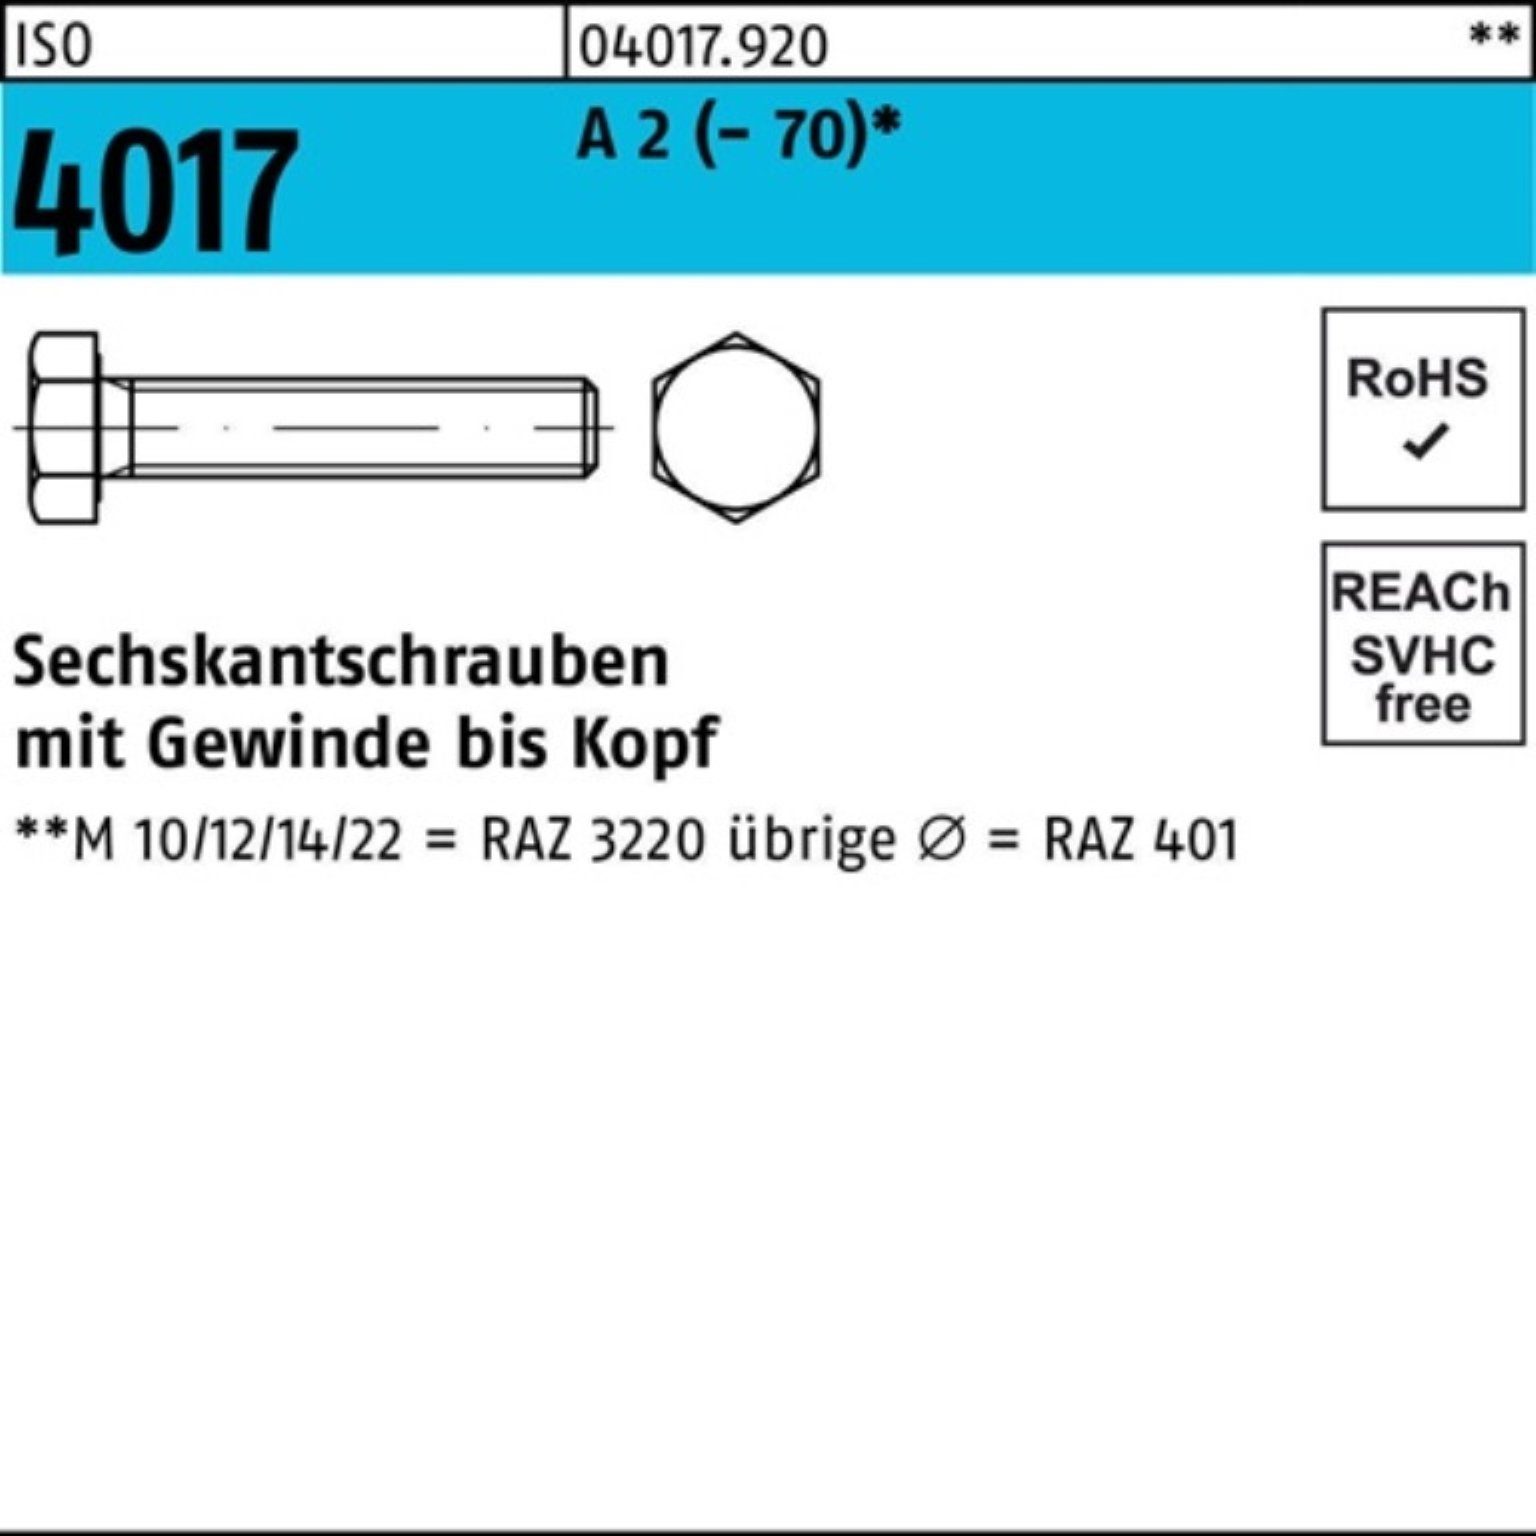 Bufab Sechskantschraube 100er Pack Sechskantschraube ISO 4017 VG M16x 40 A 2 (70) 50 Stück | Schrauben